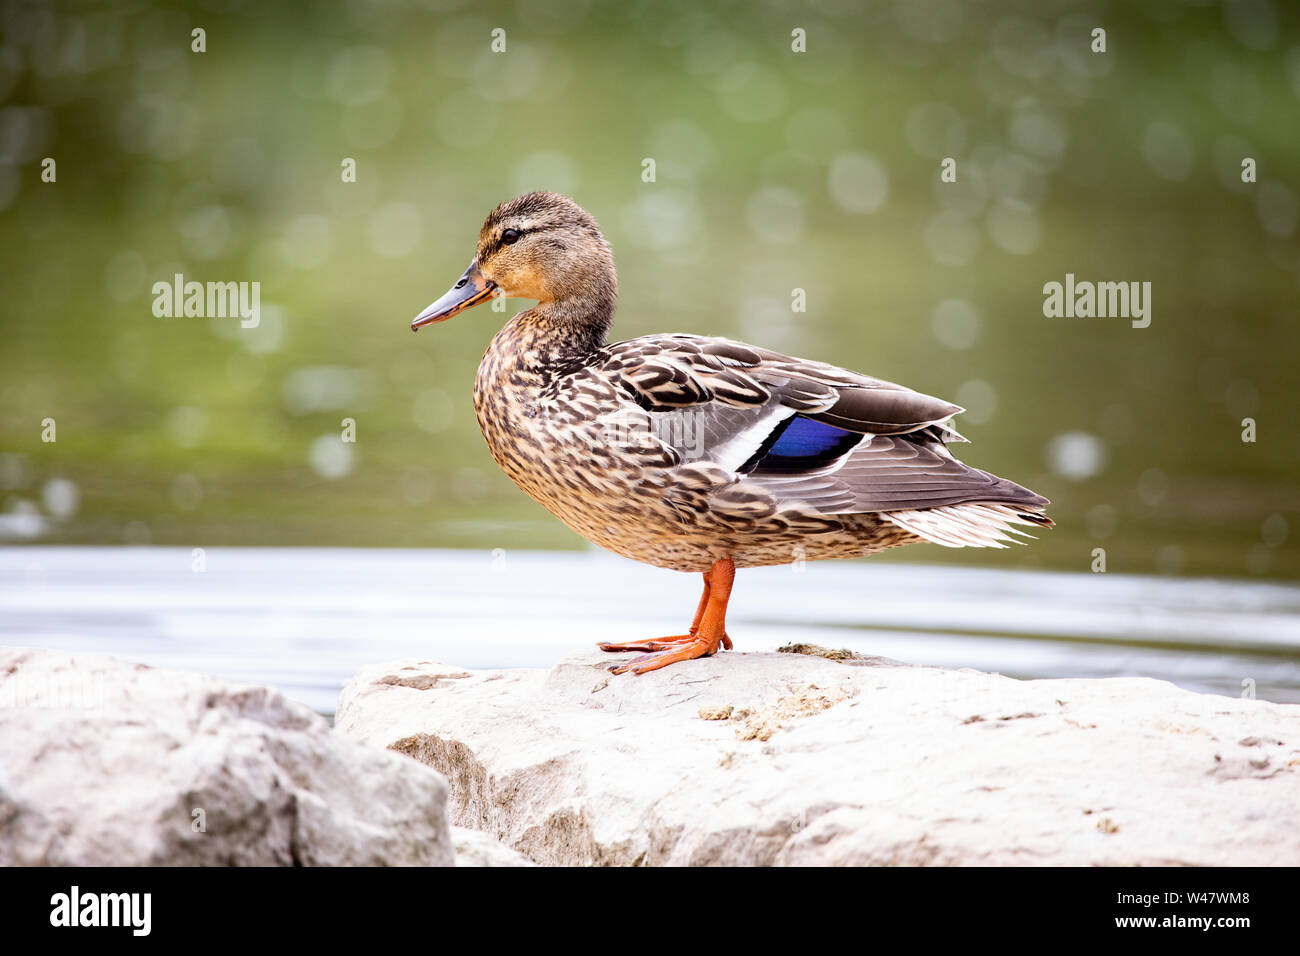 Fauna Vögel Zugvögel männliche Stockente stehen konkrete Teich Hintergrund Stockfoto